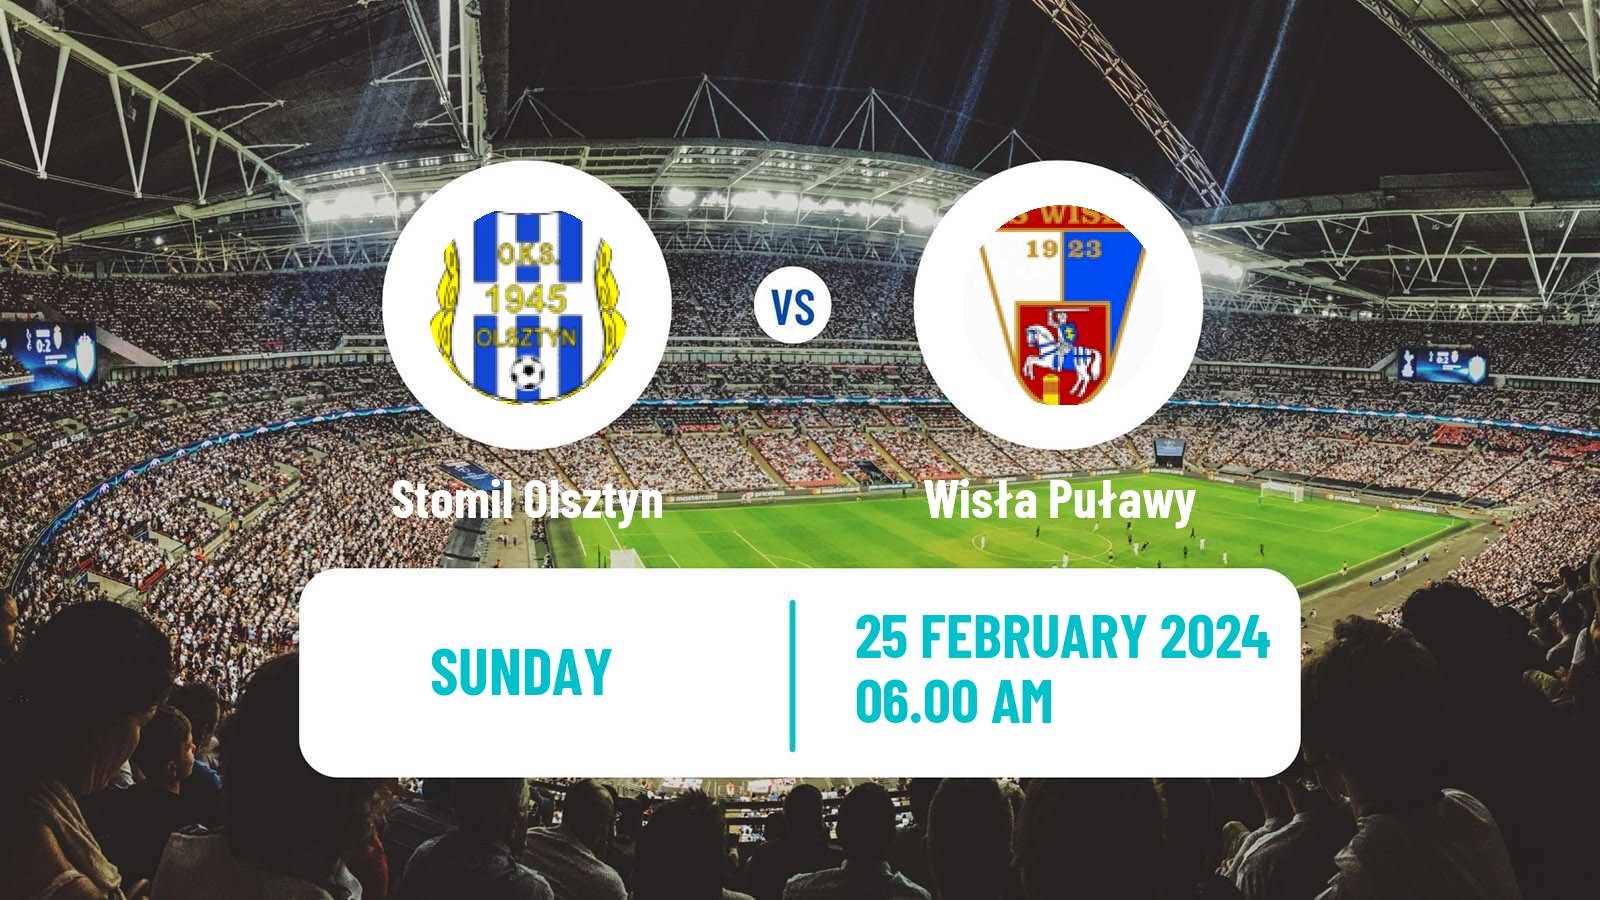 Soccer Polish Division 2 Stomil Olsztyn - Wisła Puławy